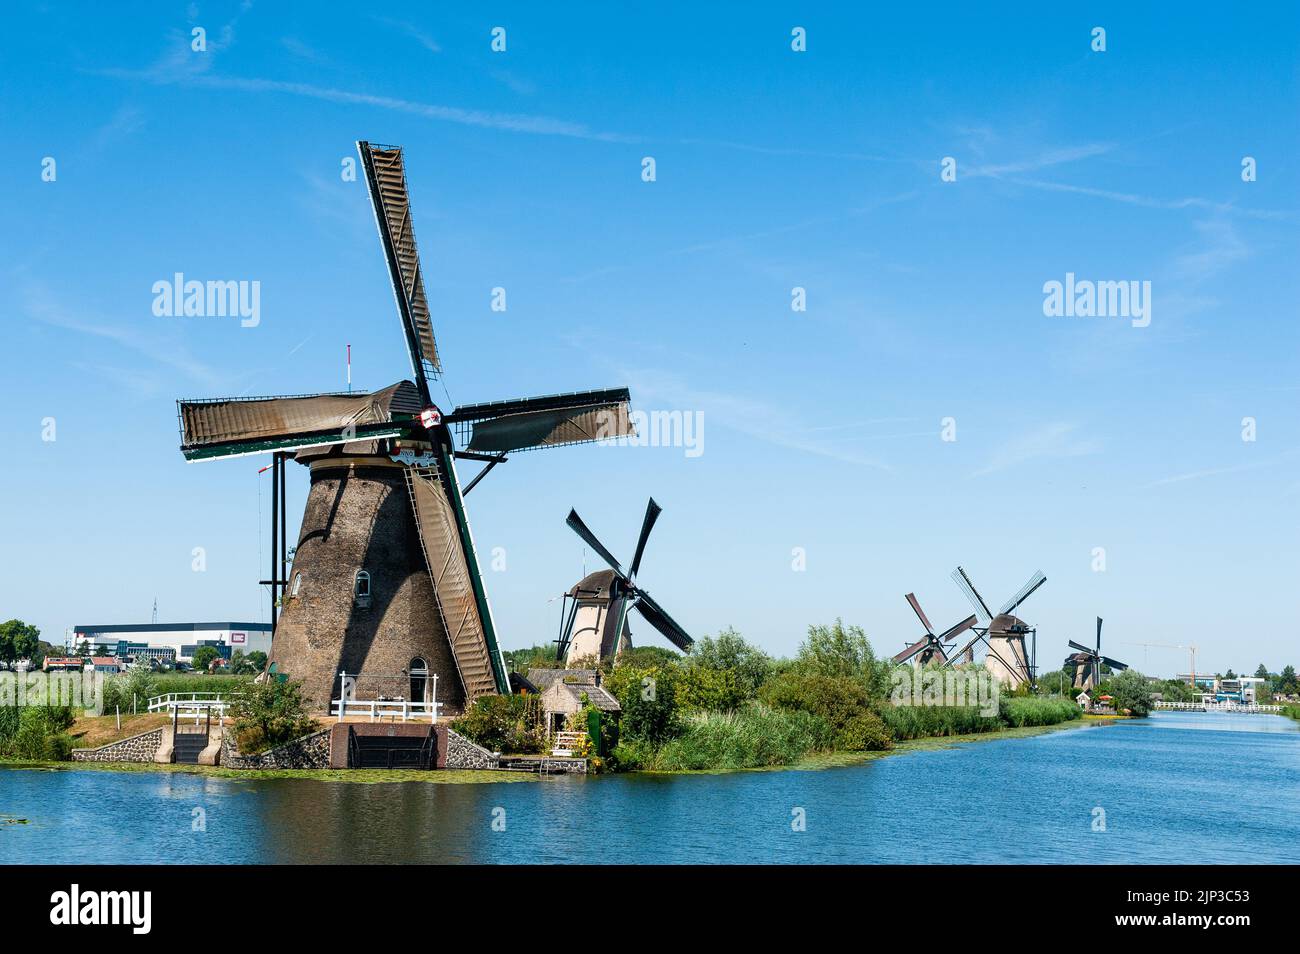 Kinderdijk, pays-Bas. 13th août 2022. Une vue depuis l'un des ponts des moulins à vent avec un ciel clair. Dans la belle région riche en eau près de Dordrecht, vous trouverez les moulins à vent de Kinderdijk. Construits vers 1740, ces 19 magnifiques moulins à vent font partie d'un plus grand système de gestion de l'eau pour éviter les inondations. Aujourd'hui, ils symbolisent la gestion de l'eau aux pays-Bas et, en 1997, ils ont été déclarés site du patrimoine mondial de l'UNESCO. Chaque année, des milliers de touristes du monde entier visitent ce lieu emblématique. Crédit : SOPA Images Limited/Alamy Live News Banque D'Images